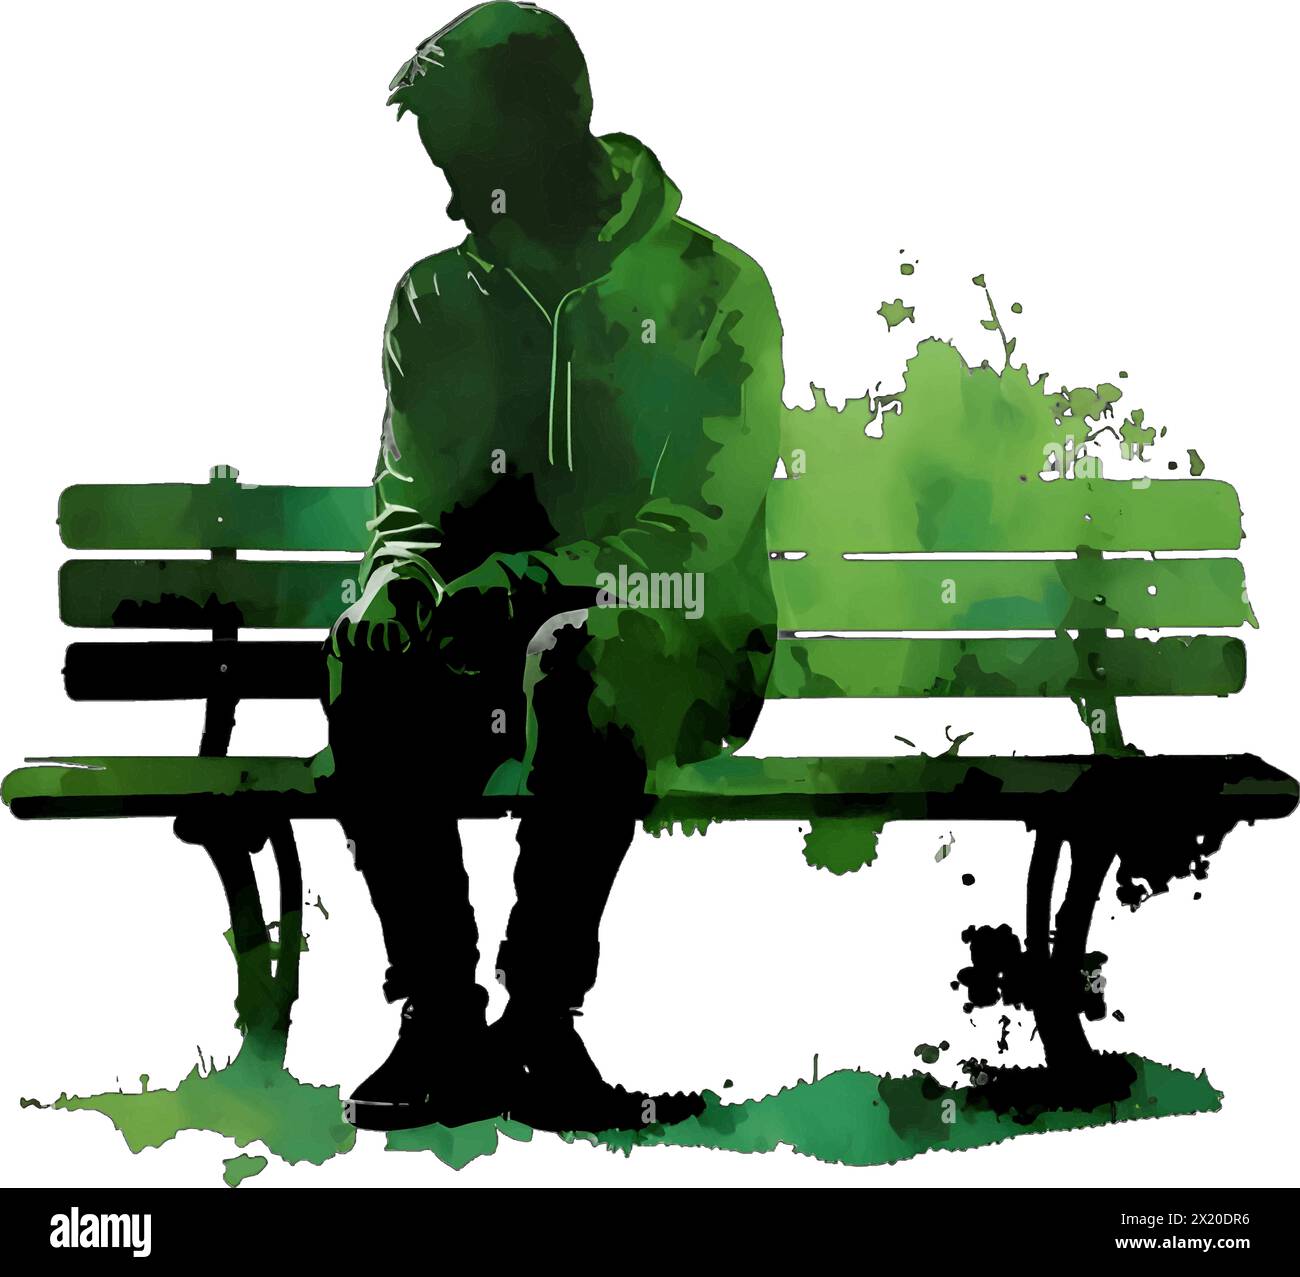 Illustration vectorielle d'un homme sur un banc en silhouette verte sur un fond blanc propre, capturant des formes gracieuses. Illustration de Vecteur